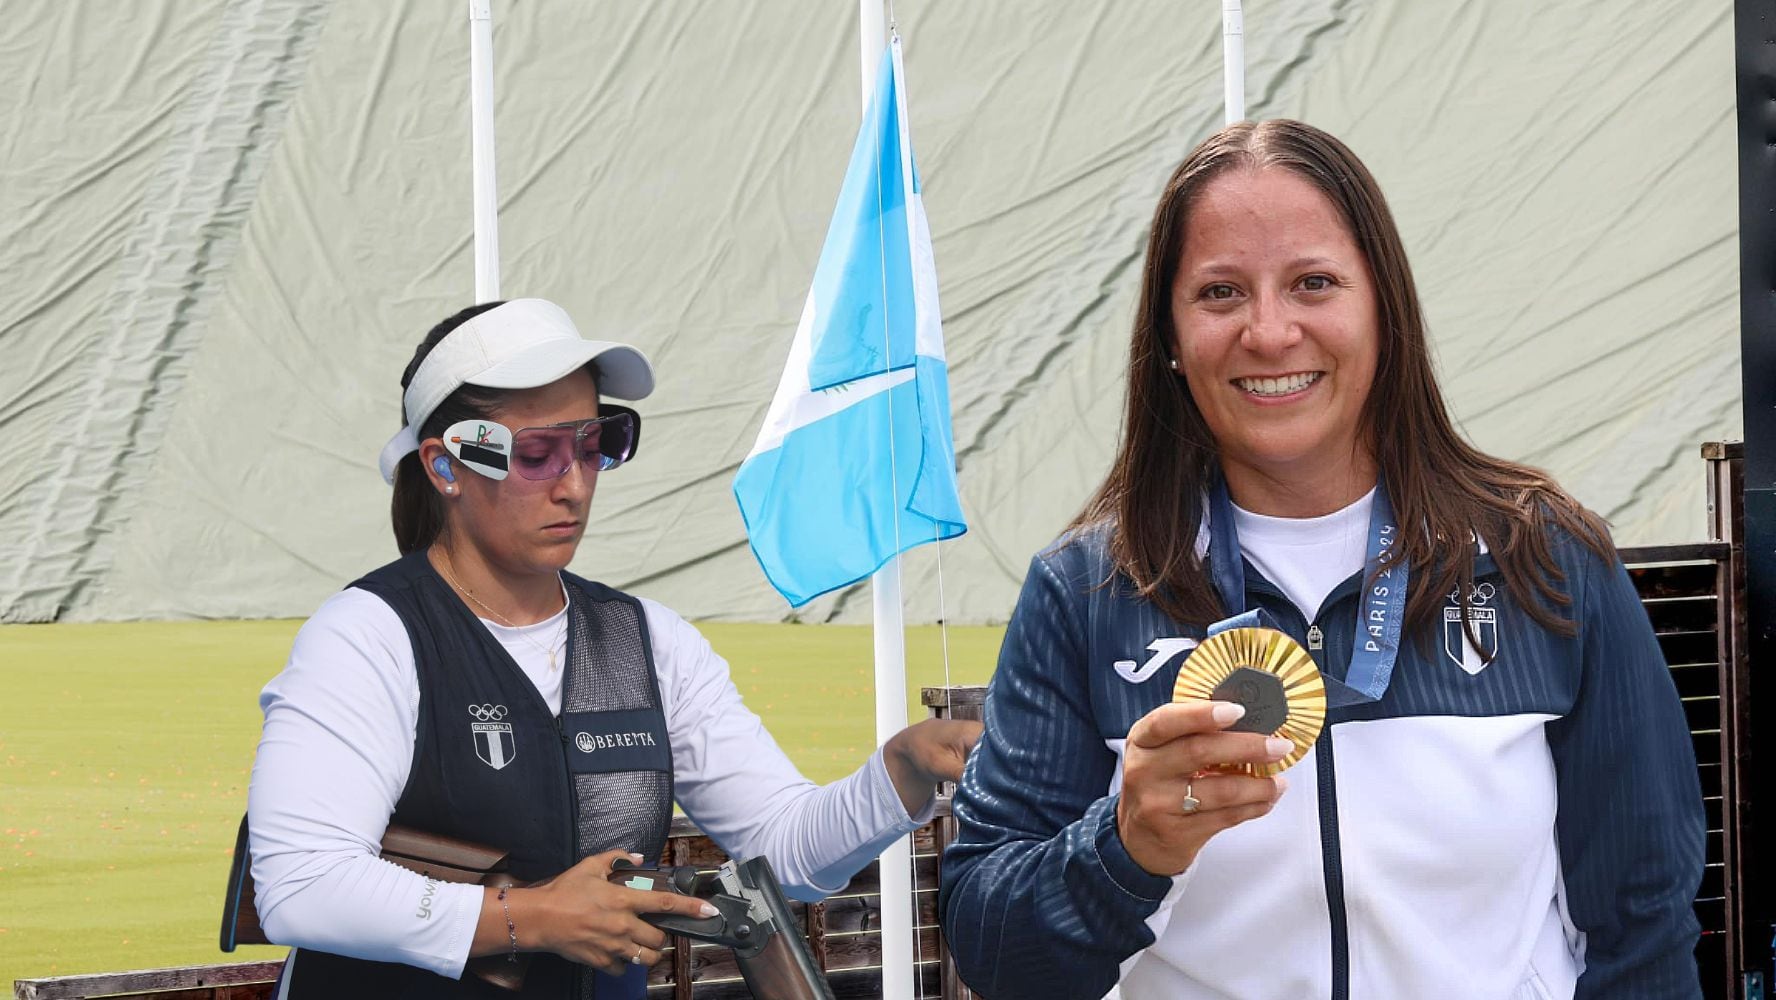 ¡América Latina brilla! Guatemala gana su primer oro en Juegos Olímpicos por medalla de Adriana Ruano